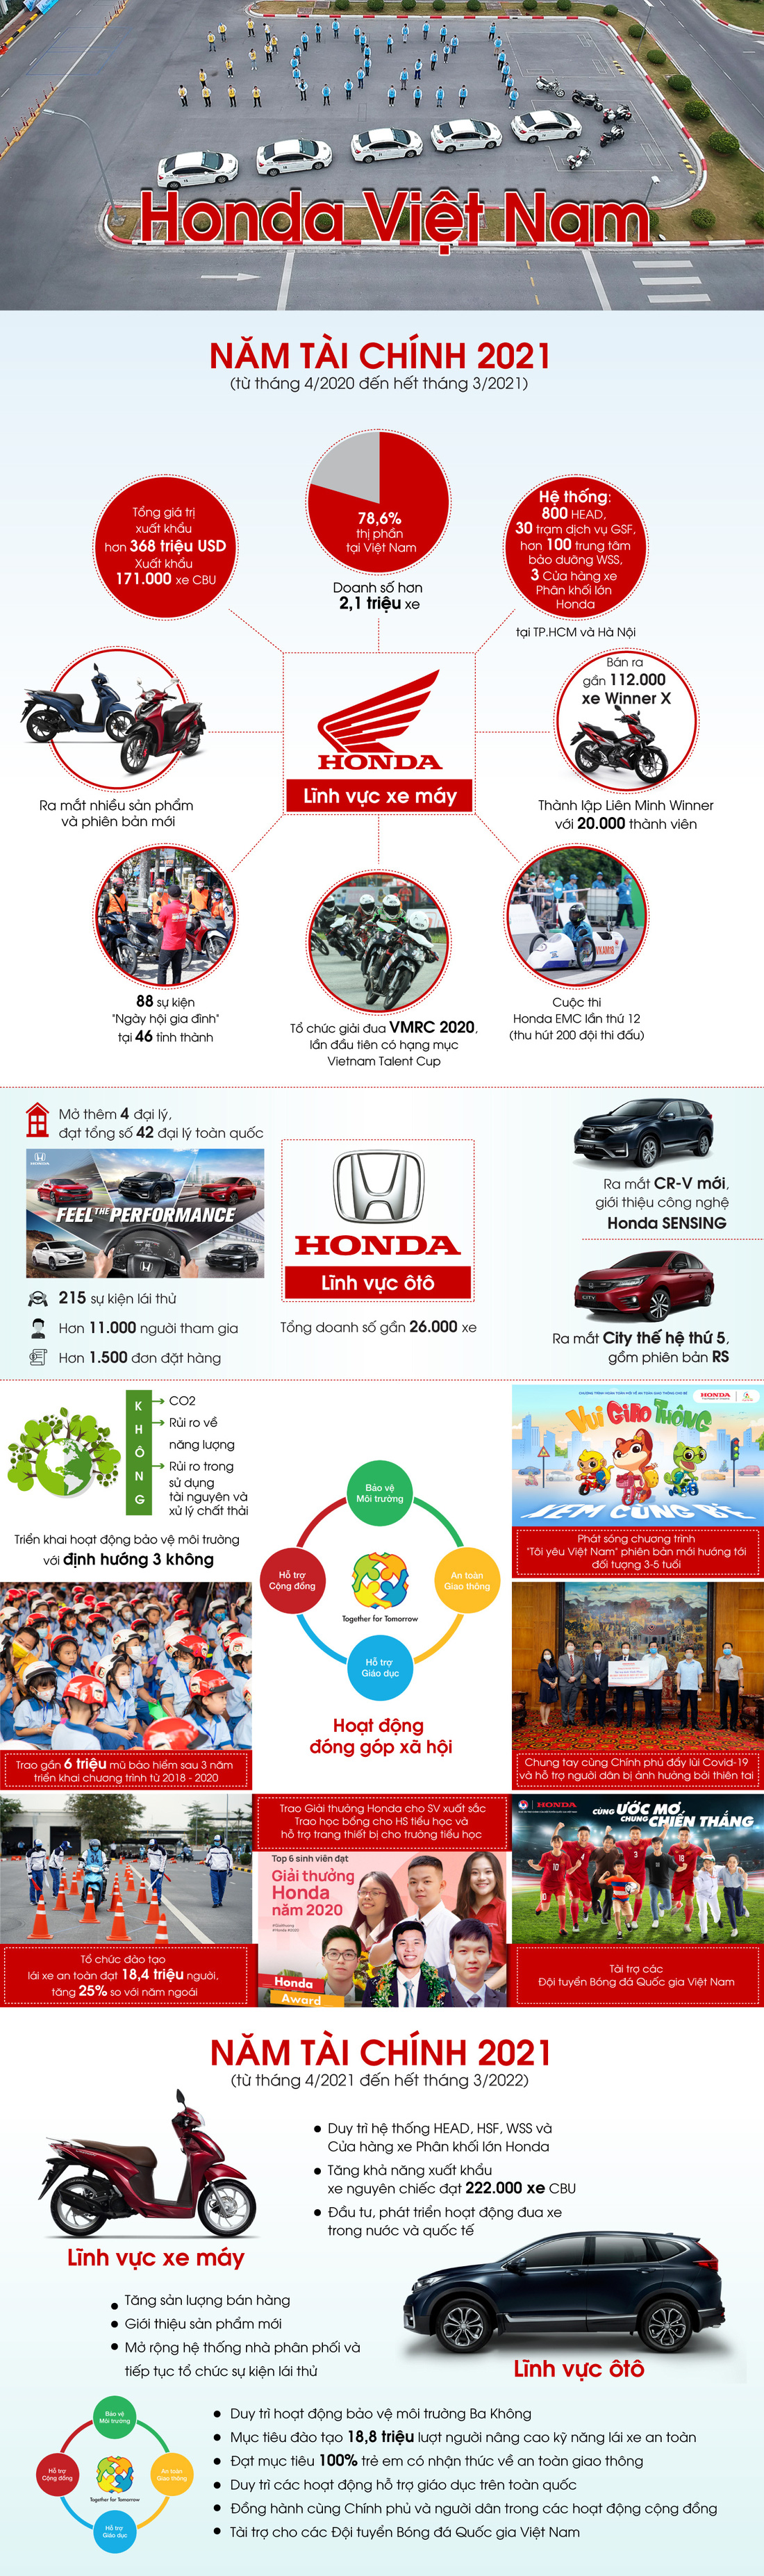 Honda Việt Nam tăng cường hoạt động hỗ trợ cộng đồng - Ảnh 1.